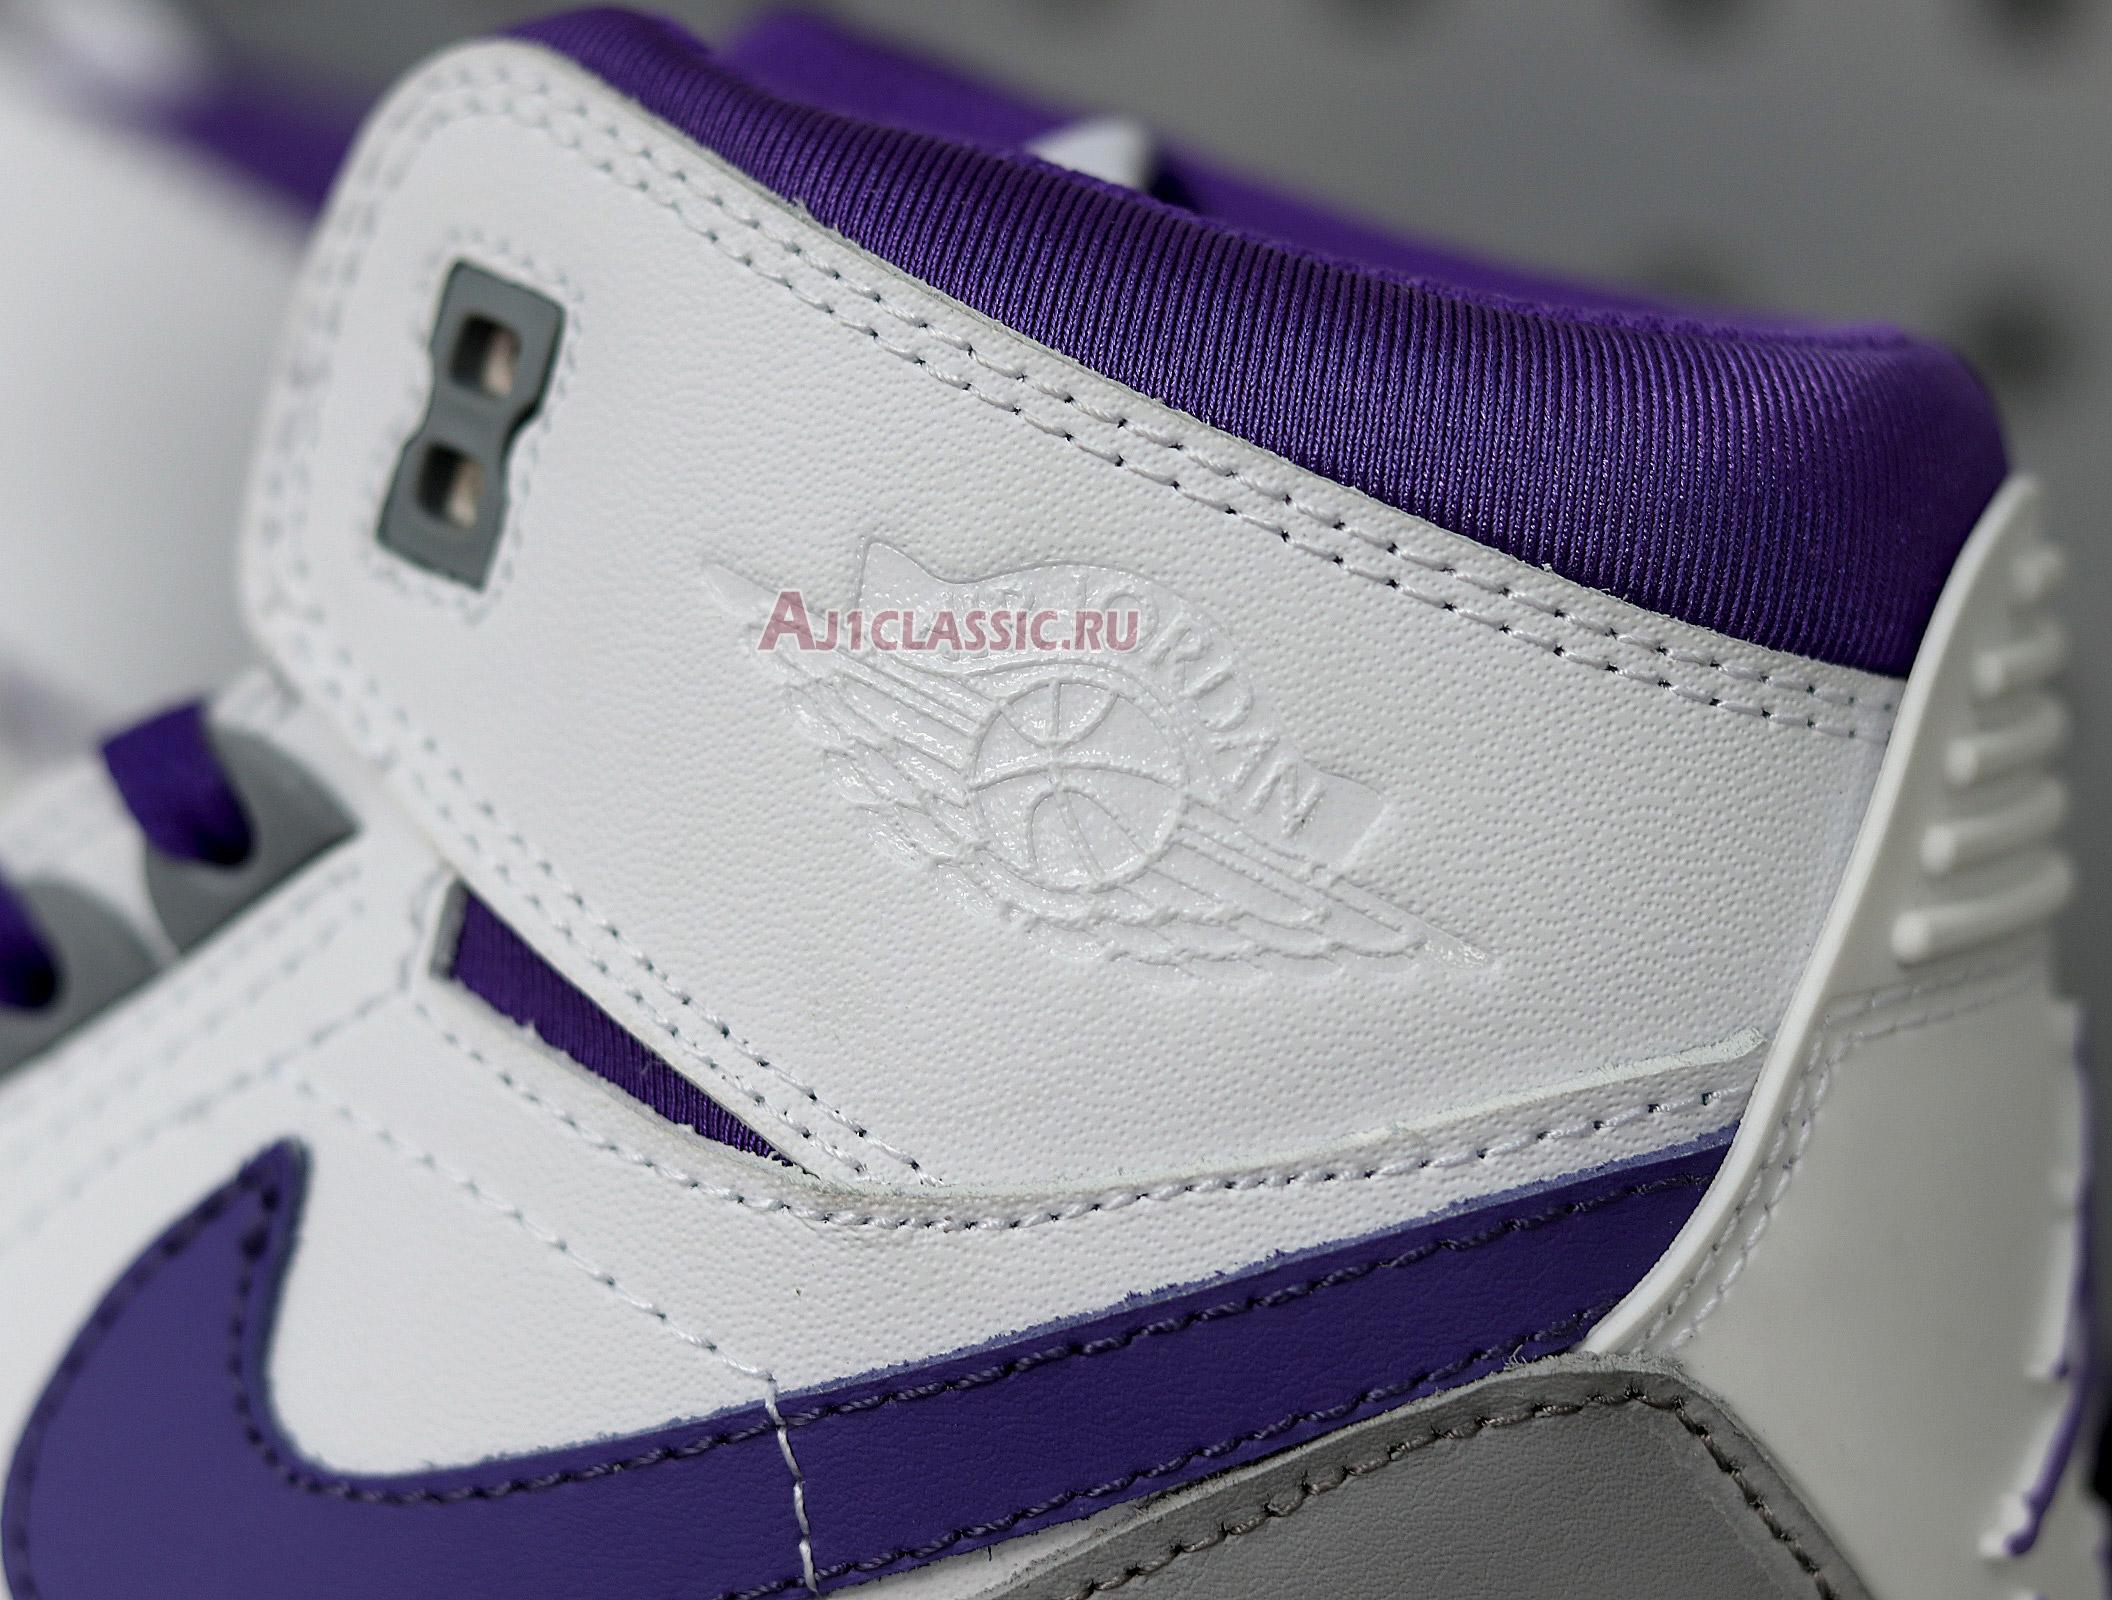 Air Jordan Legacy 312 "Lakers" AV3922-157